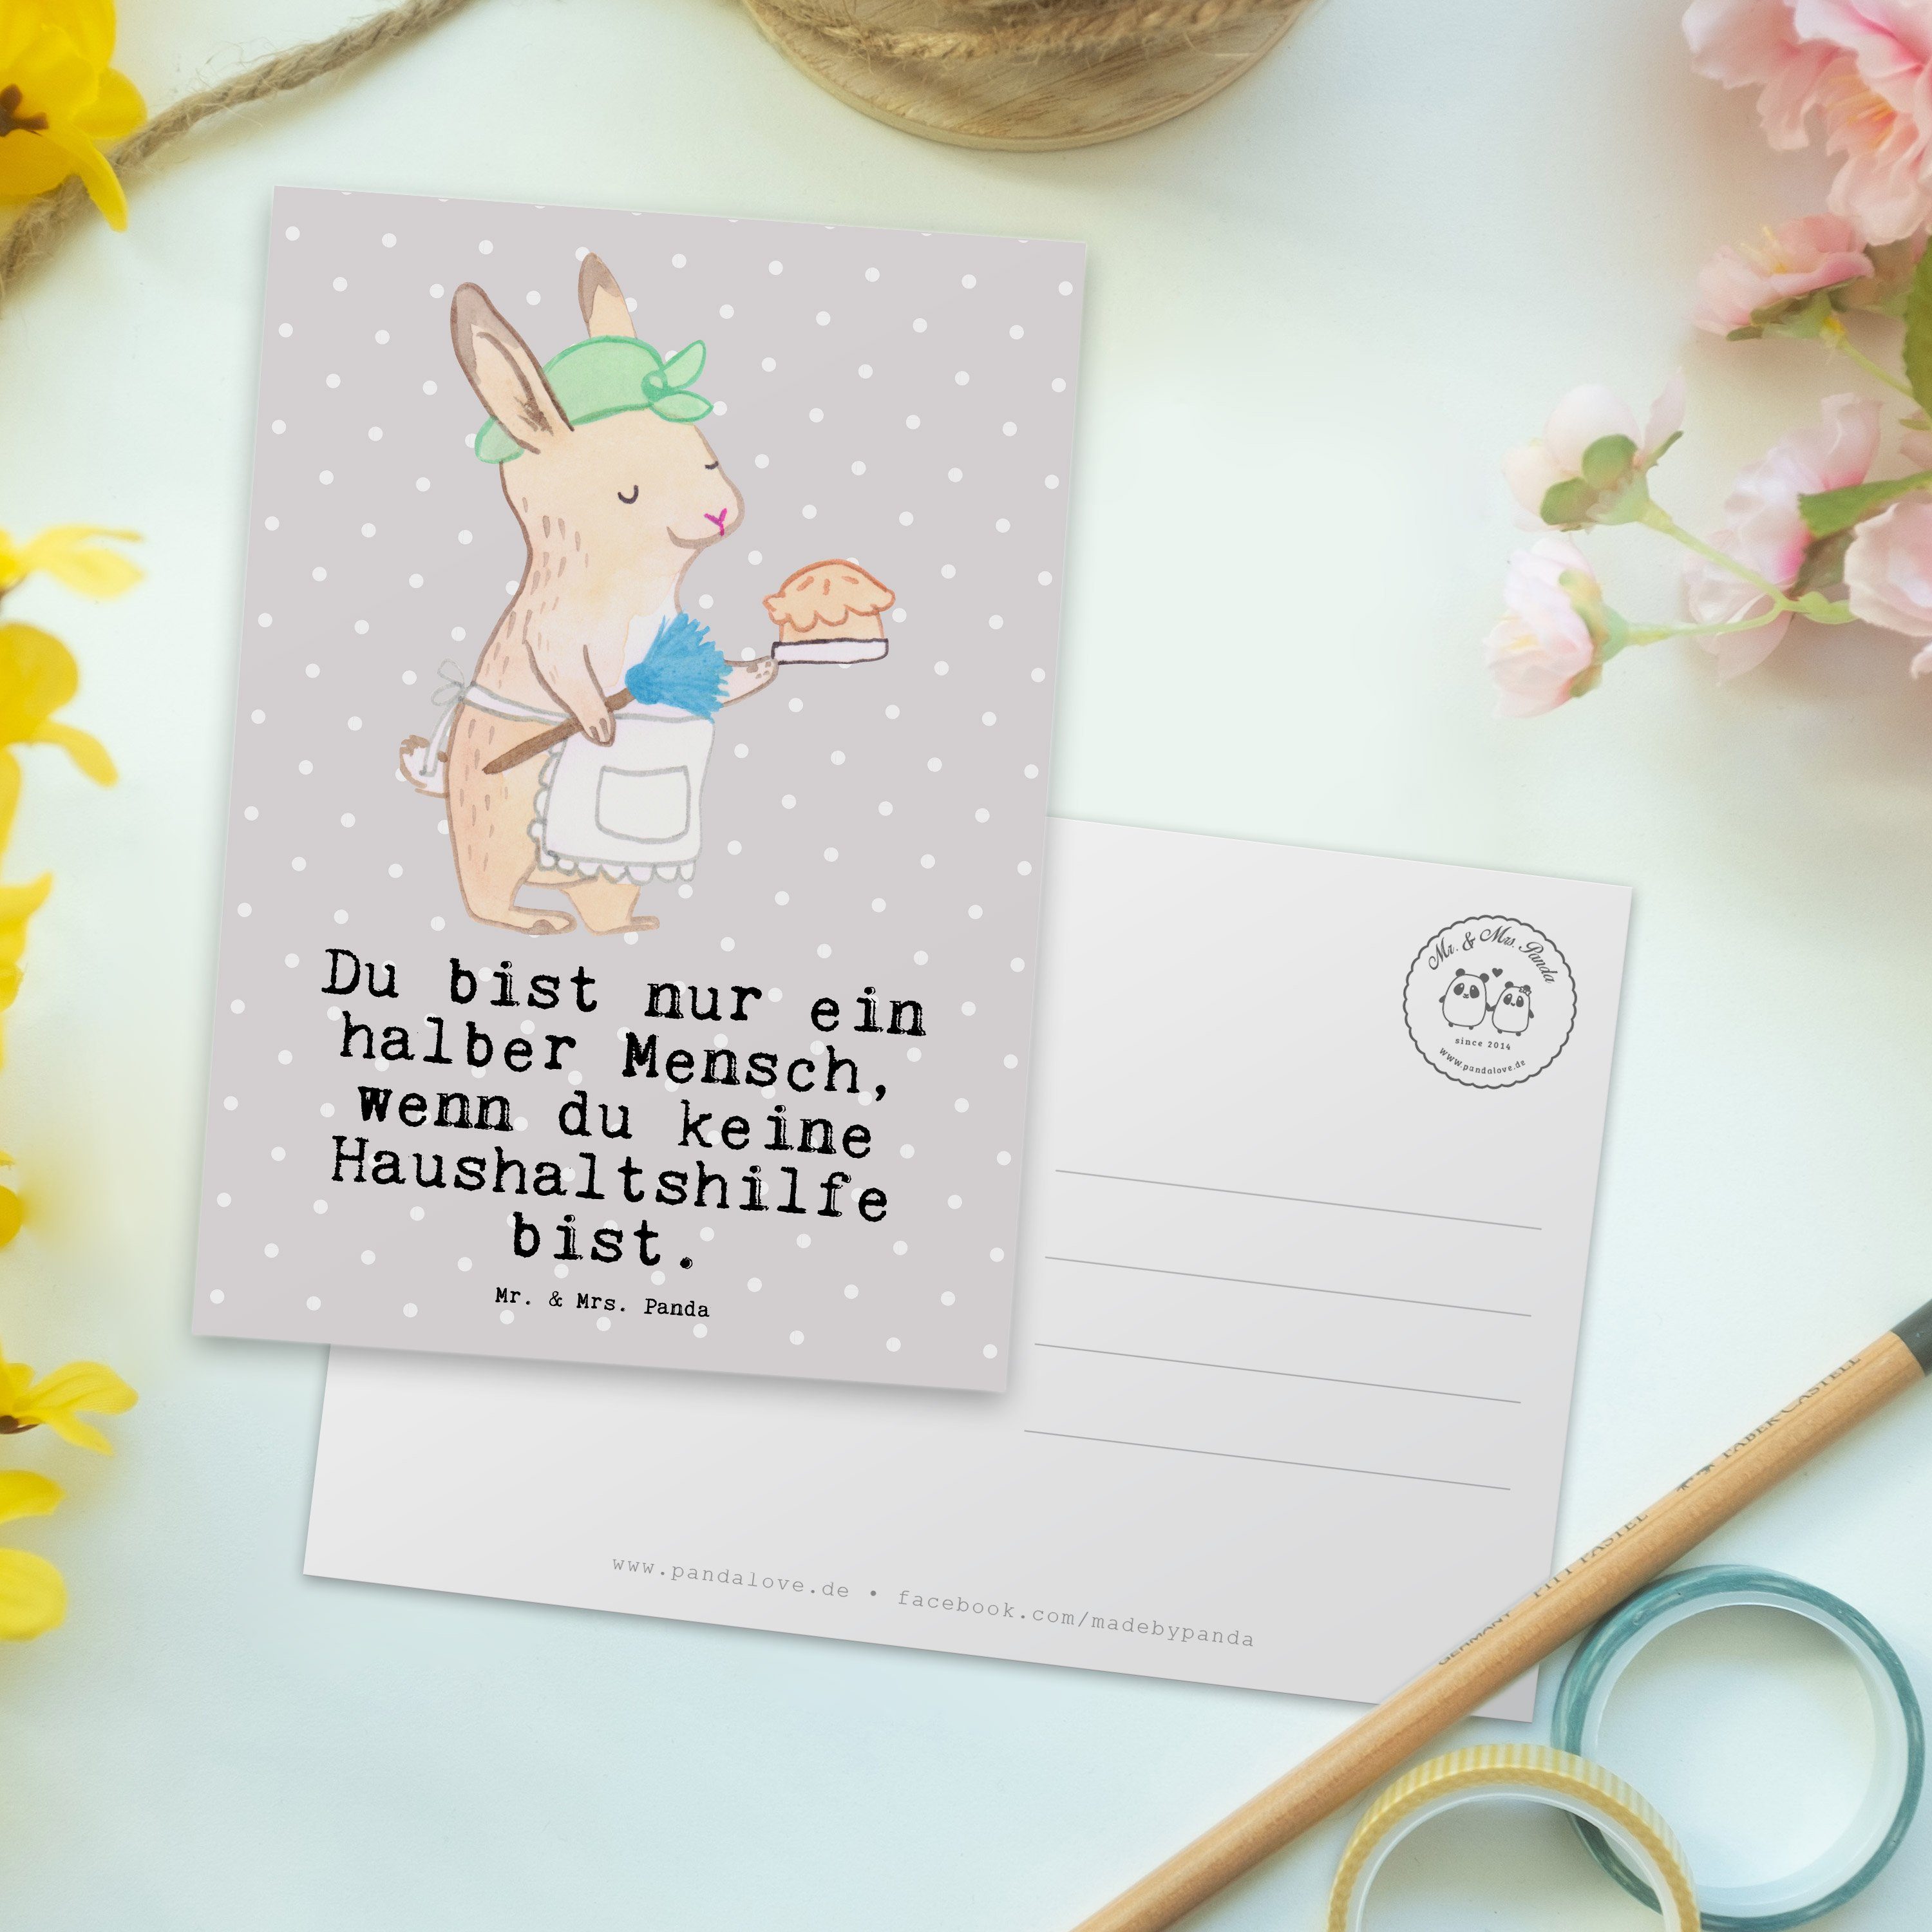 Mr. & Mrs. Panda Postkarte Haushaltshilfe mit Herz - Grau Pastell - Geschenk, Mitarbeiter, Putzf